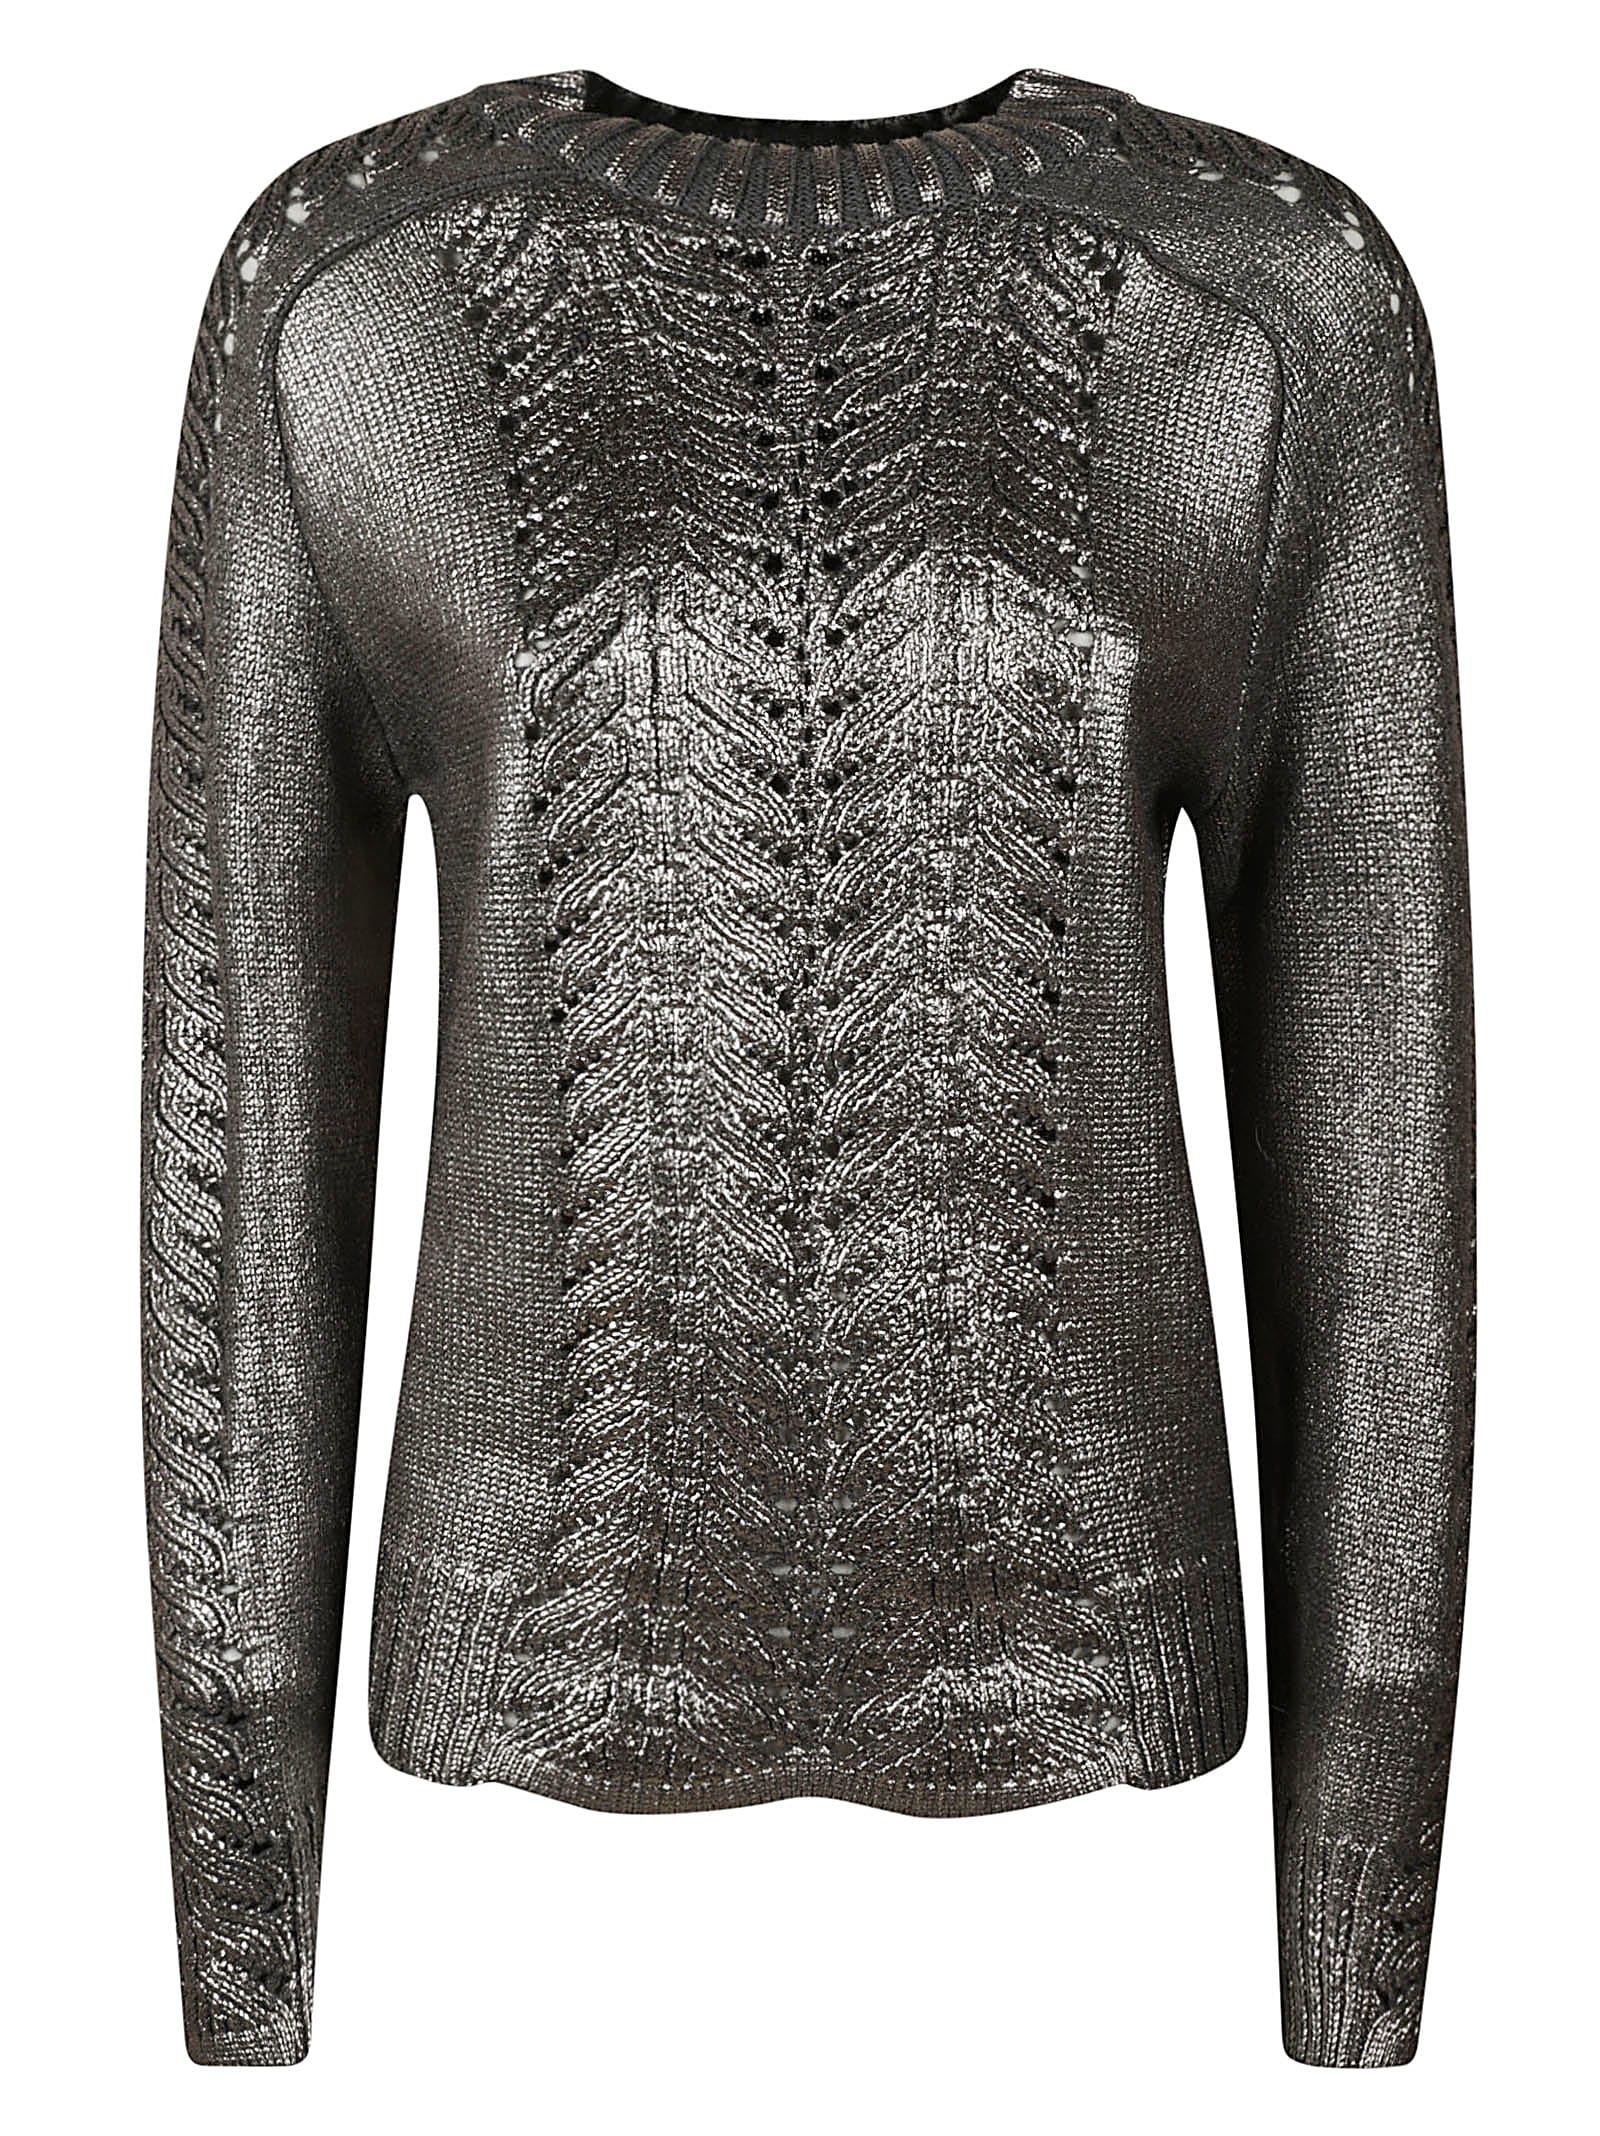 Alberta Ferretti Metallic Embroidered Pullover